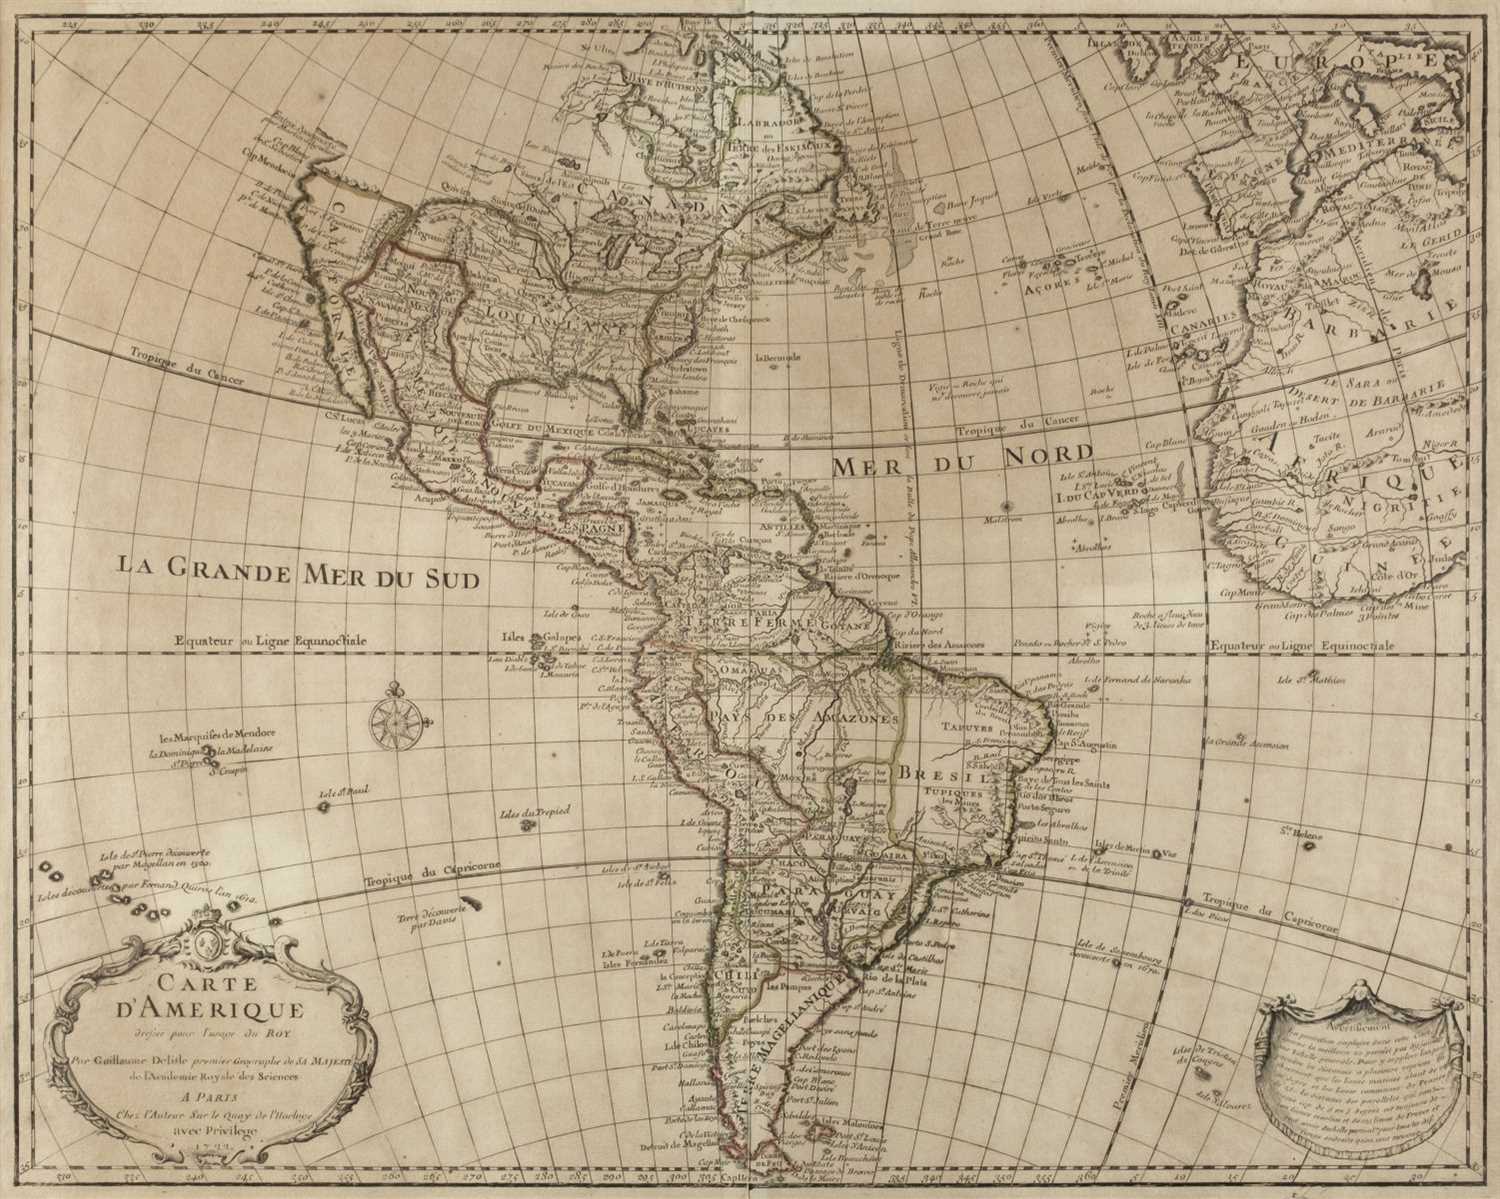 Lot 4 - Americas. De L'Isle (Guillaume), Carte d'Amerique, 1722